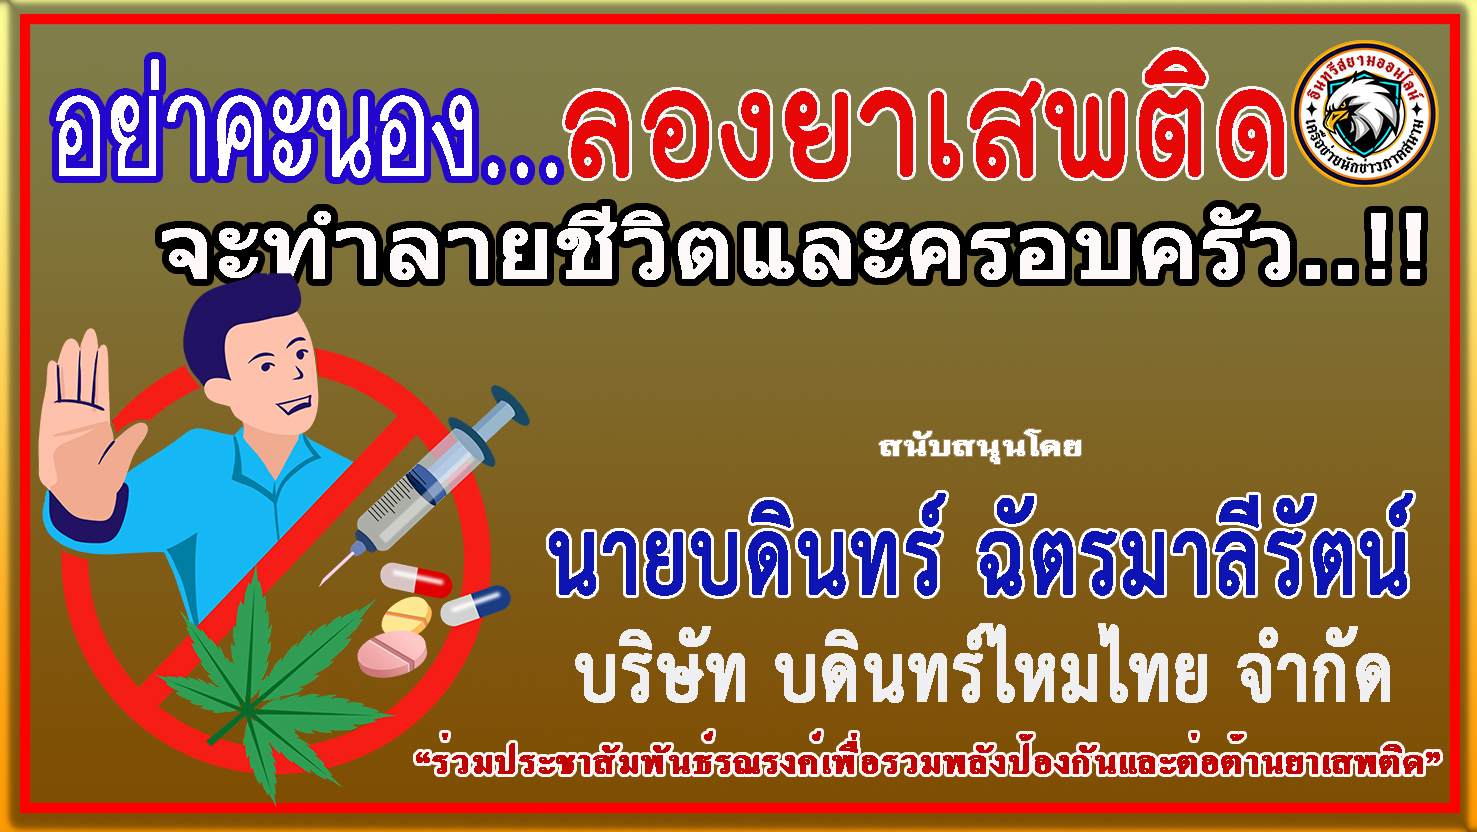 นครราชสีมา-บริษัท บดินทร์ ไหมไทย จำกัด ร่วม “ประชาสัมพันธ์รณรงค์ป้องกันและต่อต้านยาเสพติด”